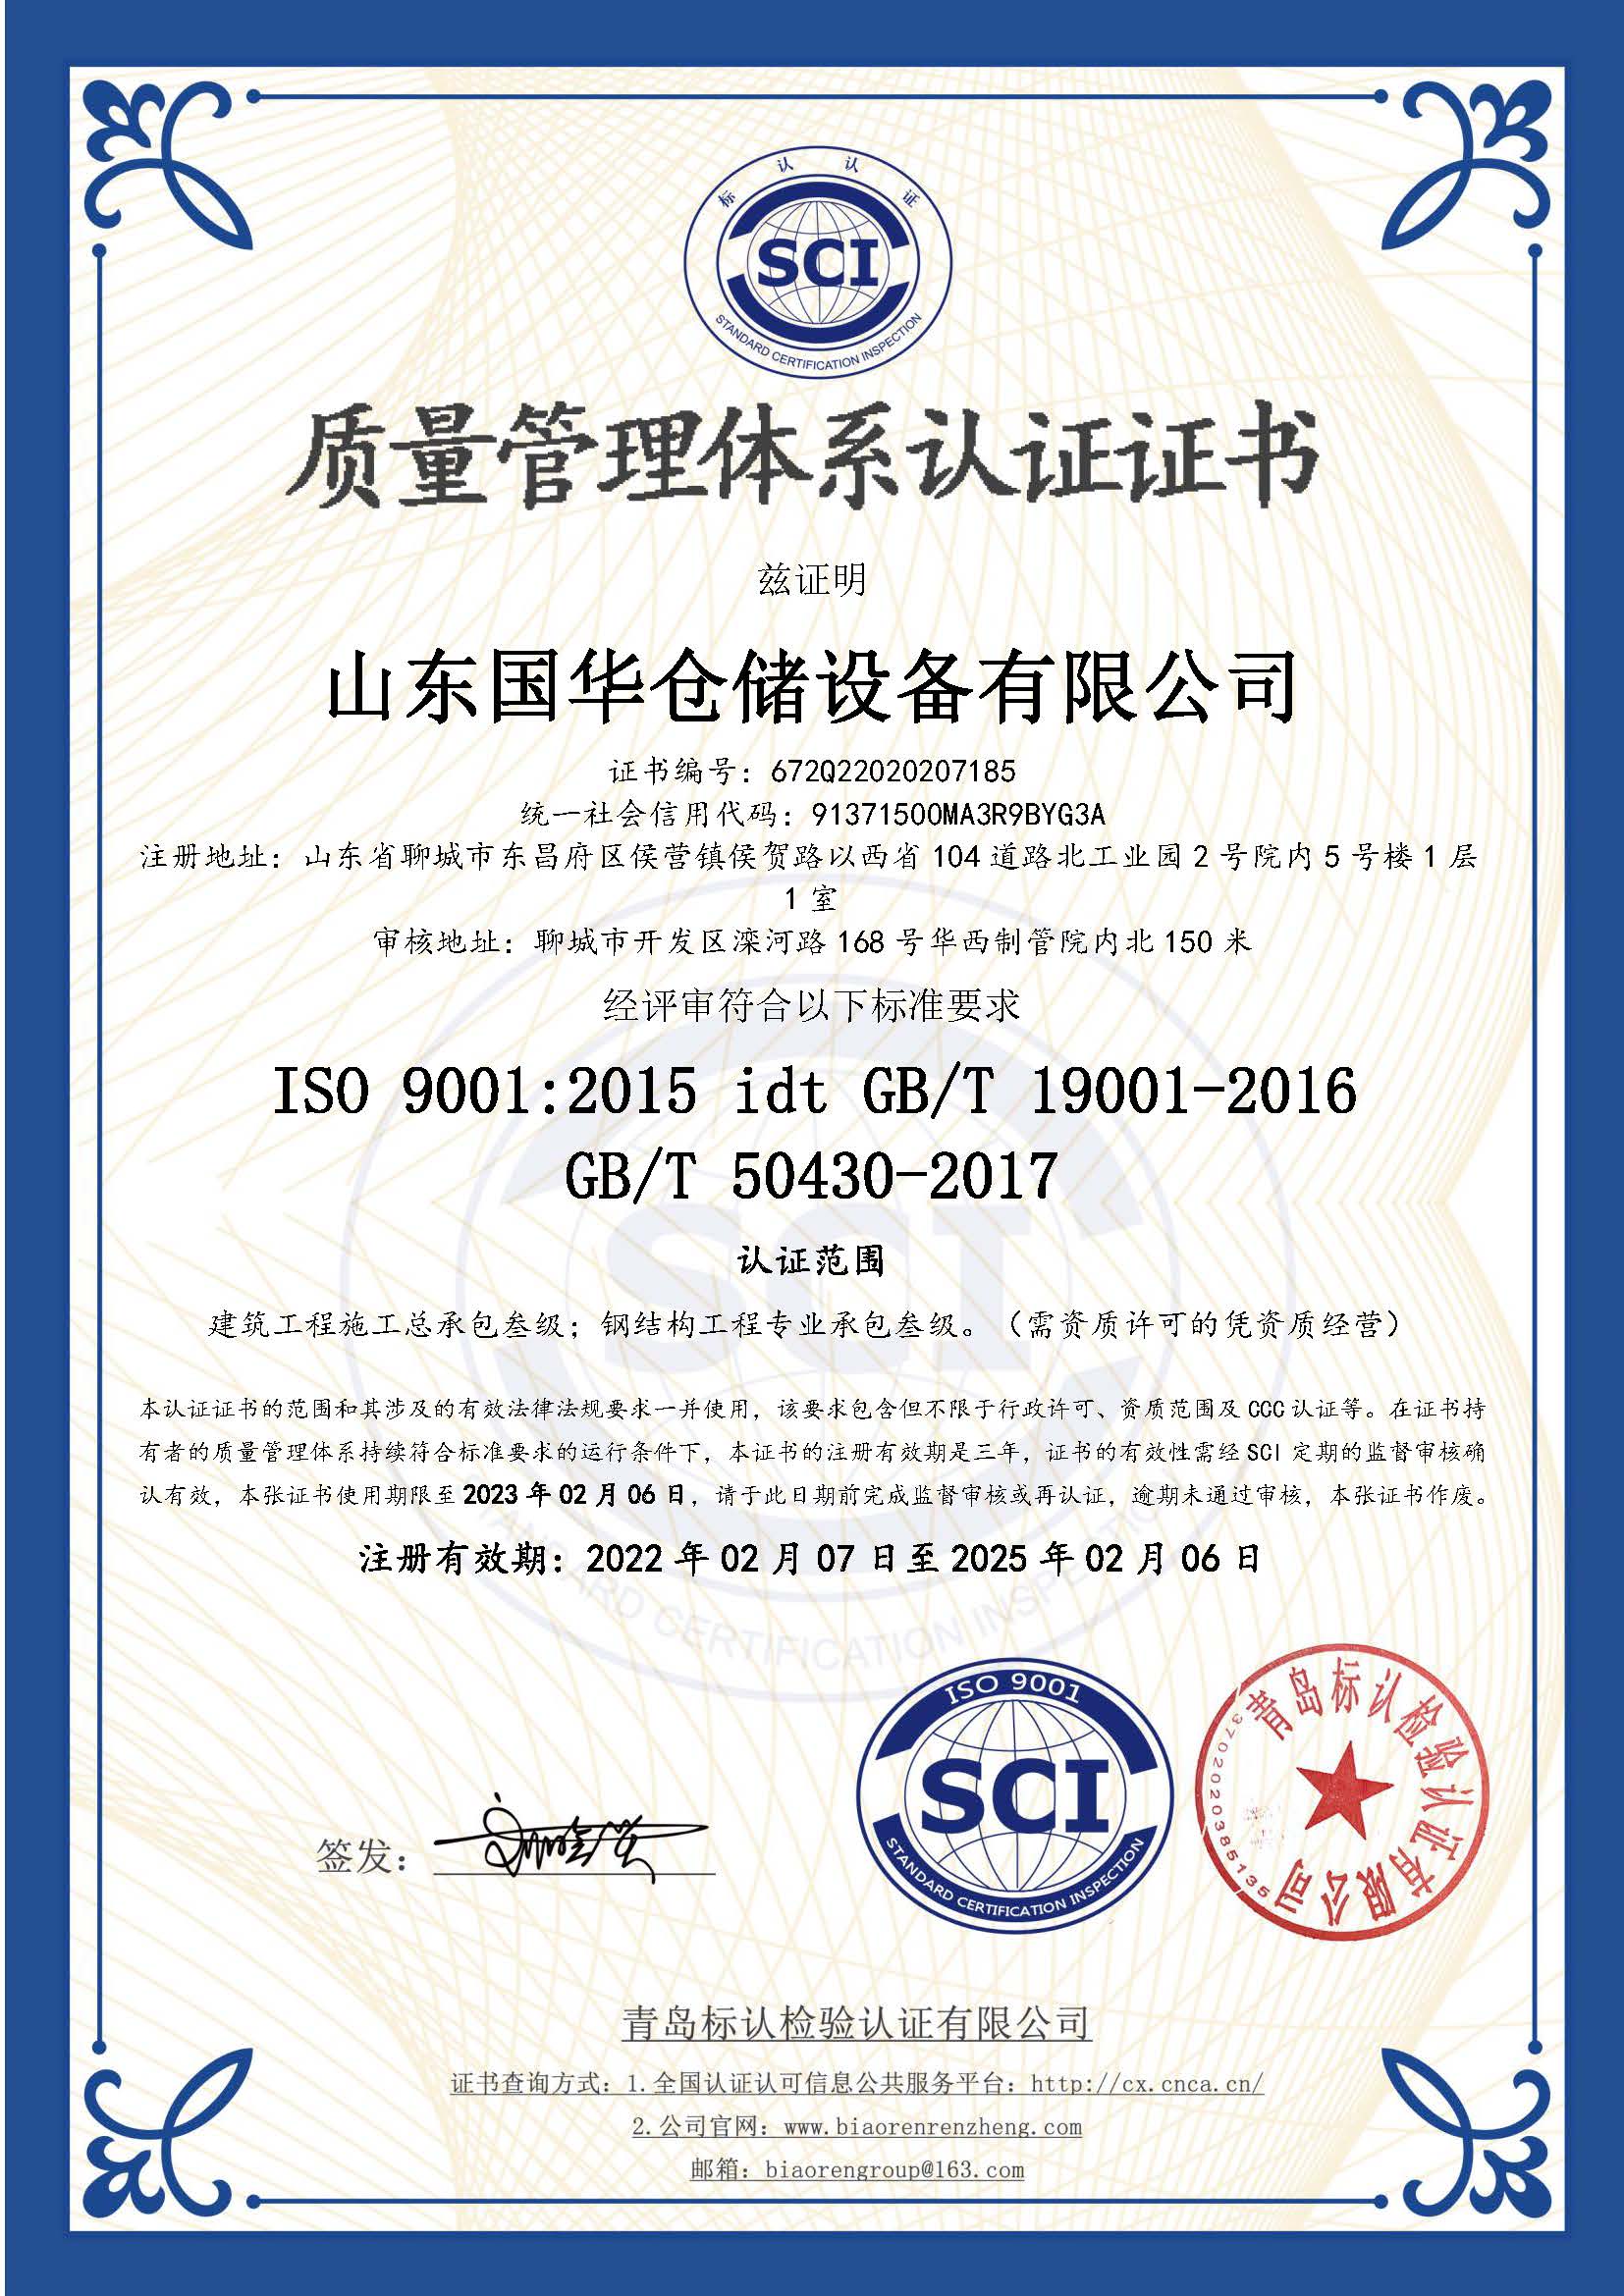 恩施钢板仓ISO质量体系认证证书